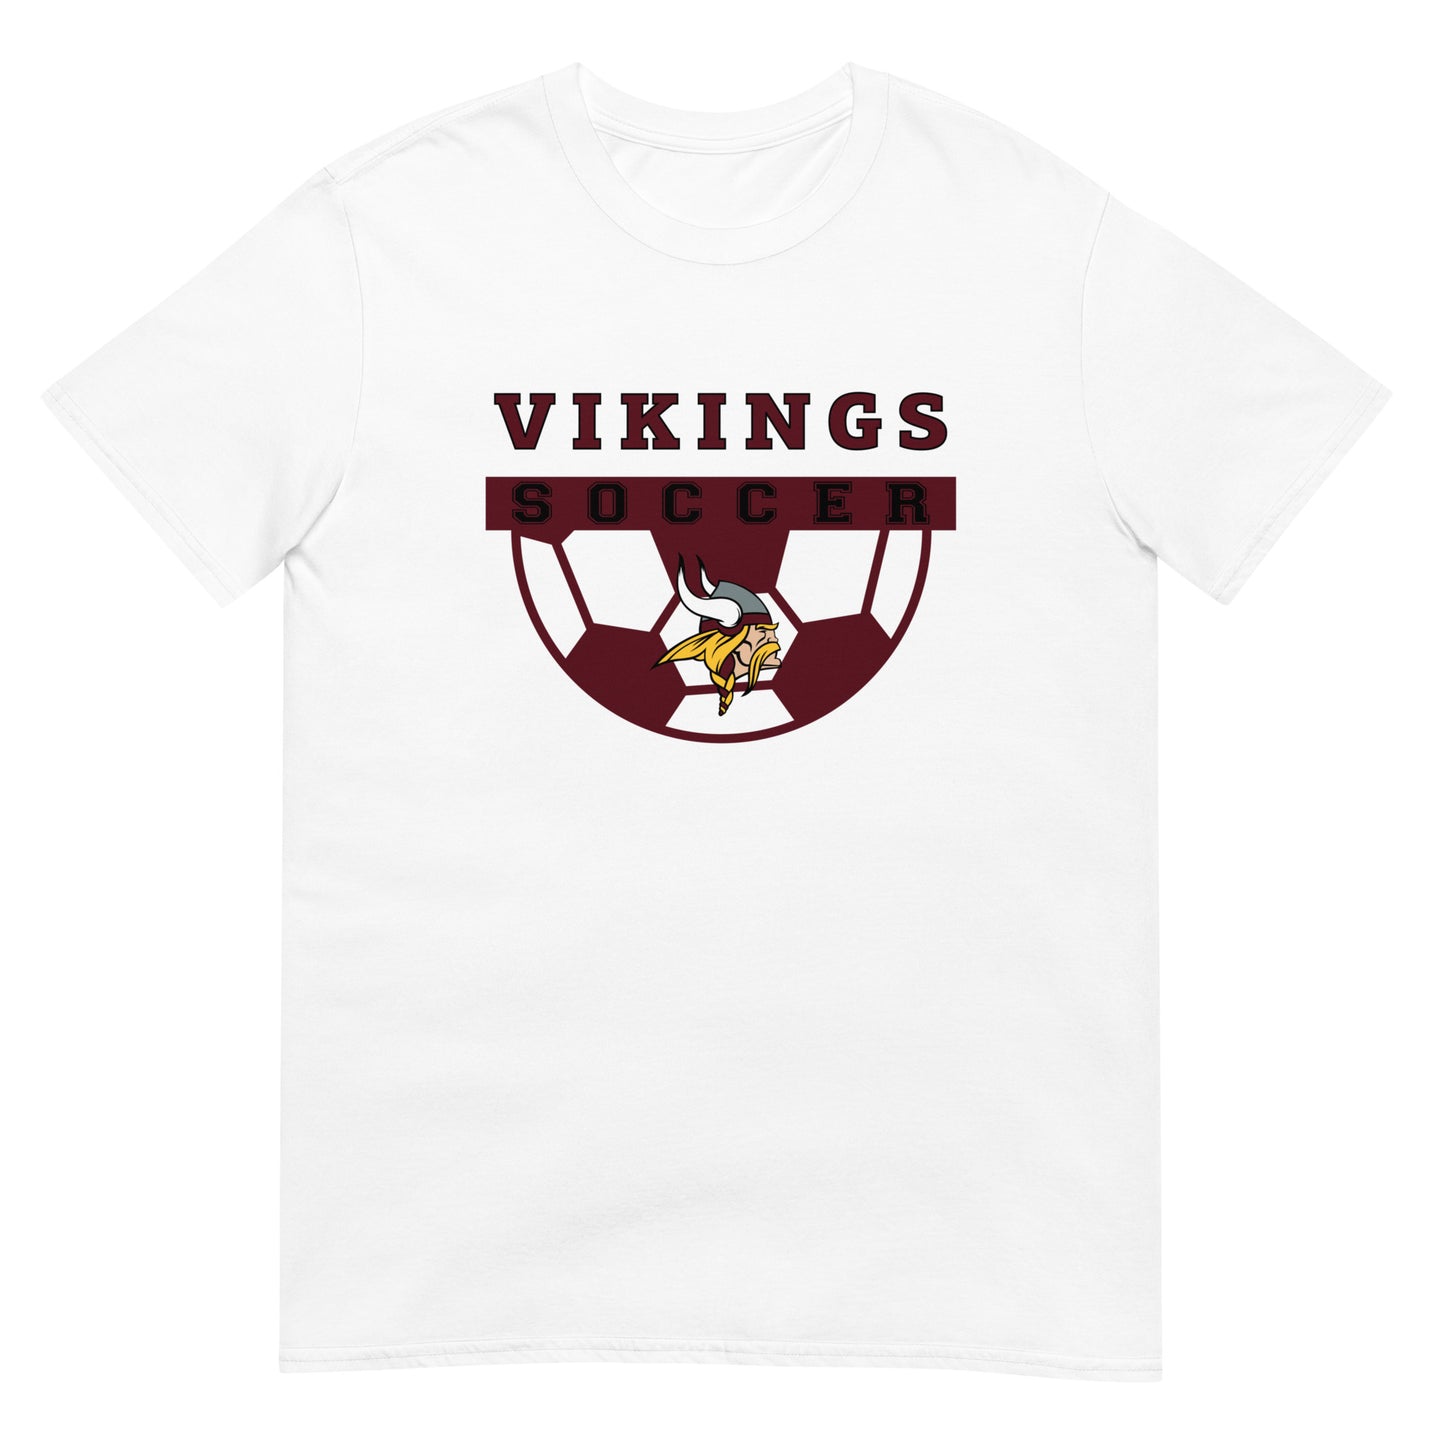 Viking Soccer Short-Sleeve Unisex T-Shirt